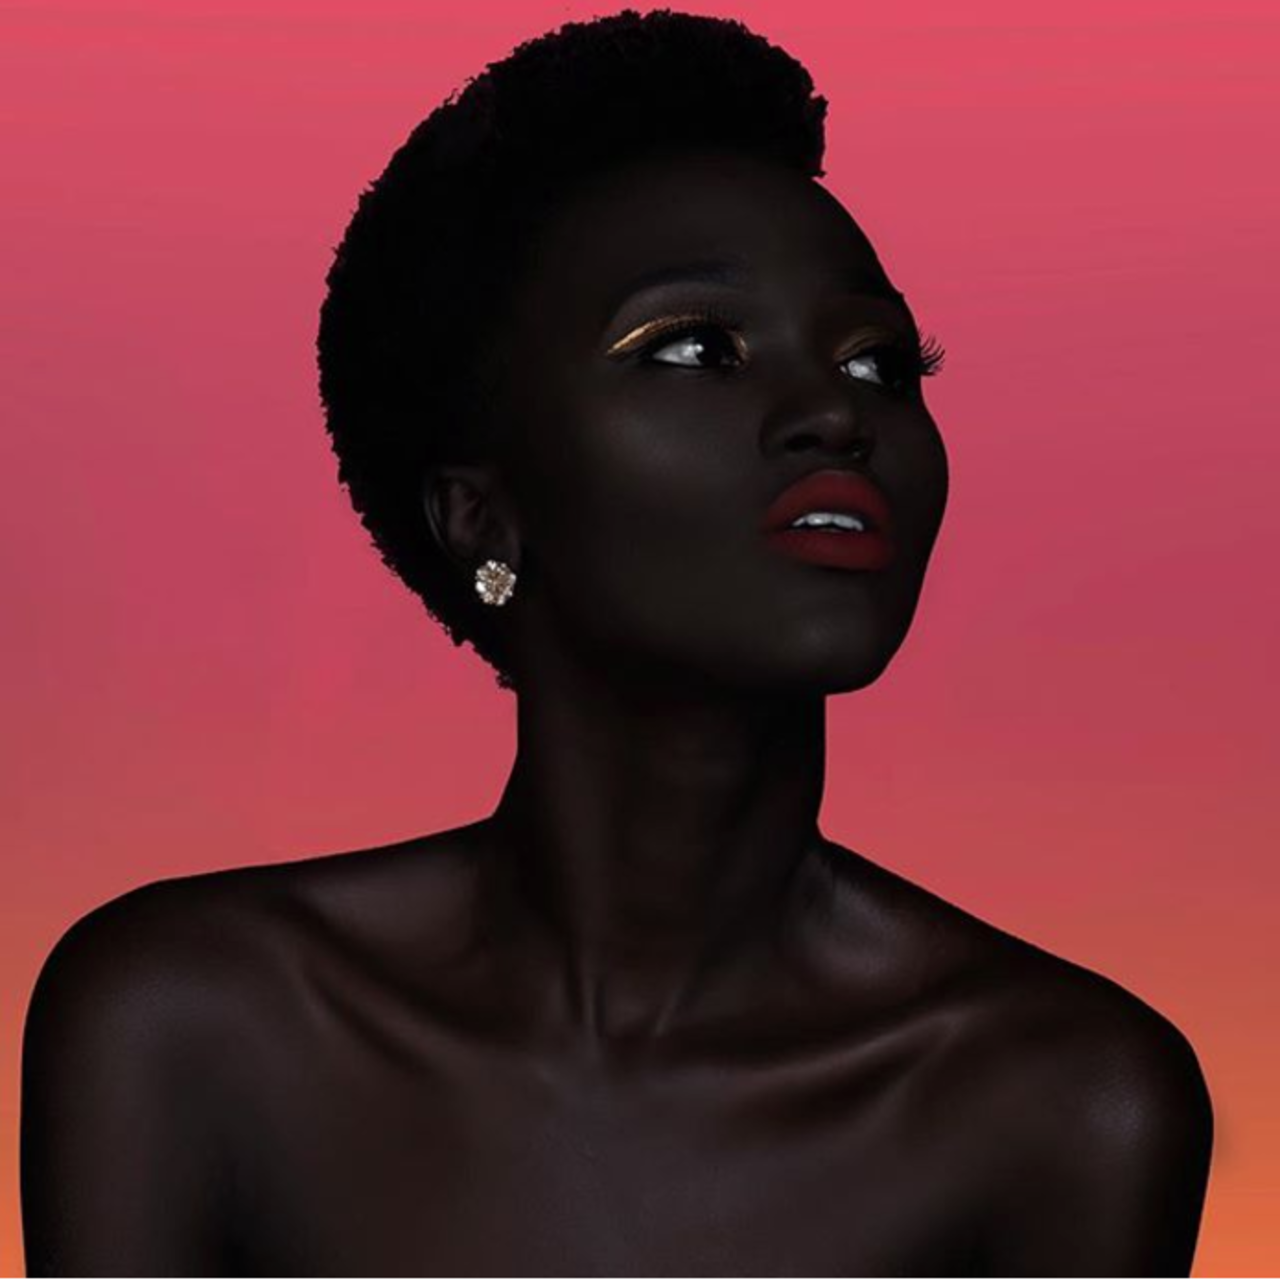 Негритянка говорит. Няким Гатвеч. Королева тьмы - Ньяким Гатвех - модель из Южного Судана. Няким Гатвех - "Королева тьмы" из Южного Судана. Ньяким Гатвеч модель.